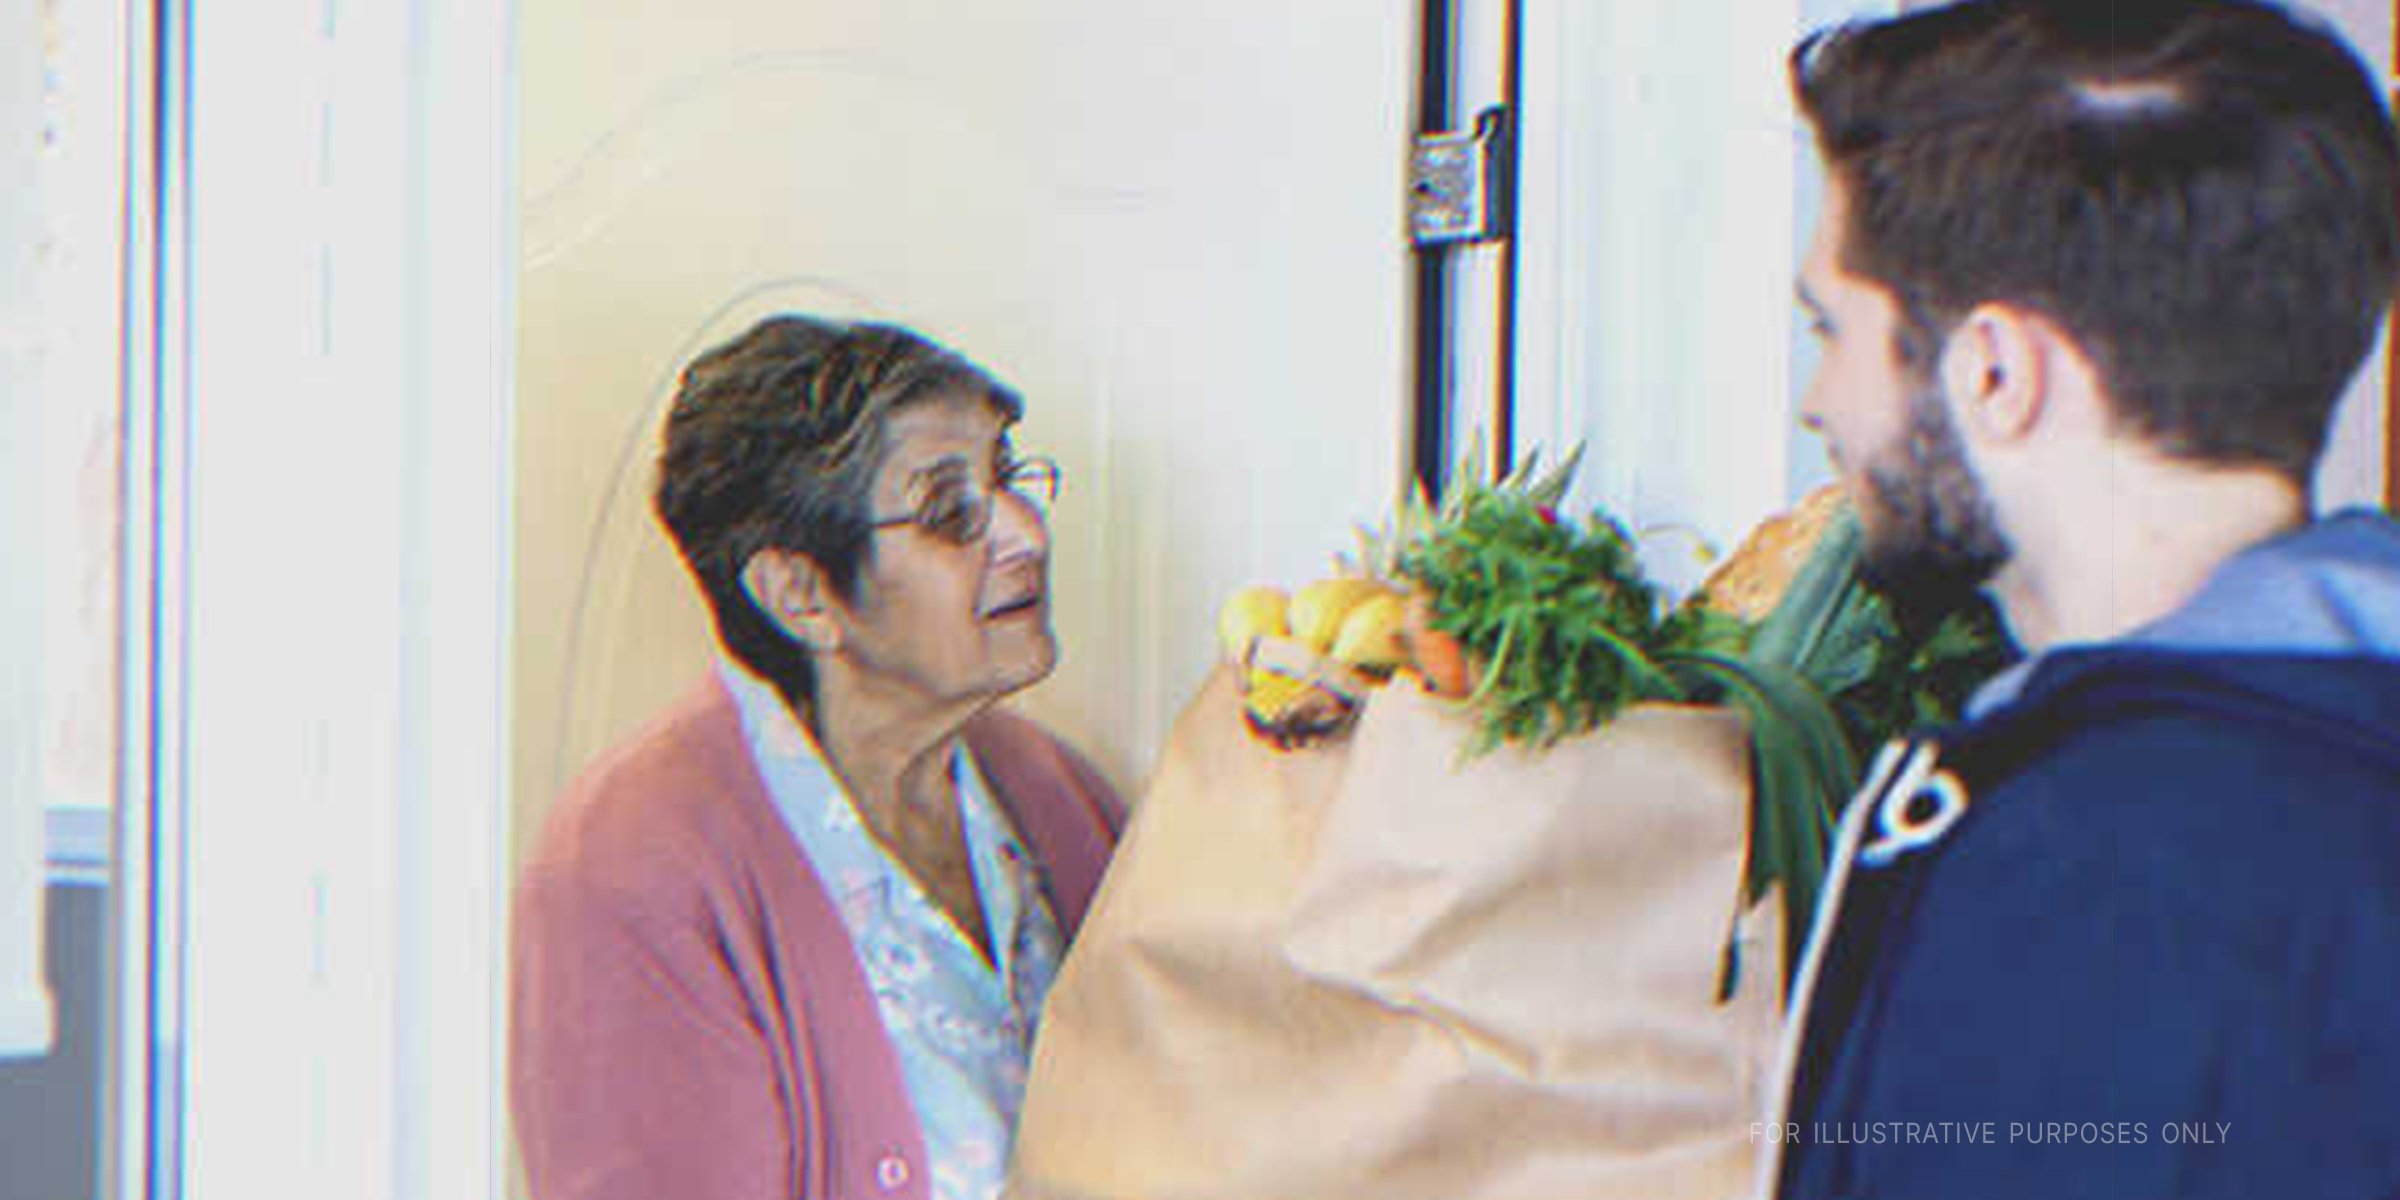 Eine alte Frau nimmt eine Tüte entgegen | Quelle: Getty Images